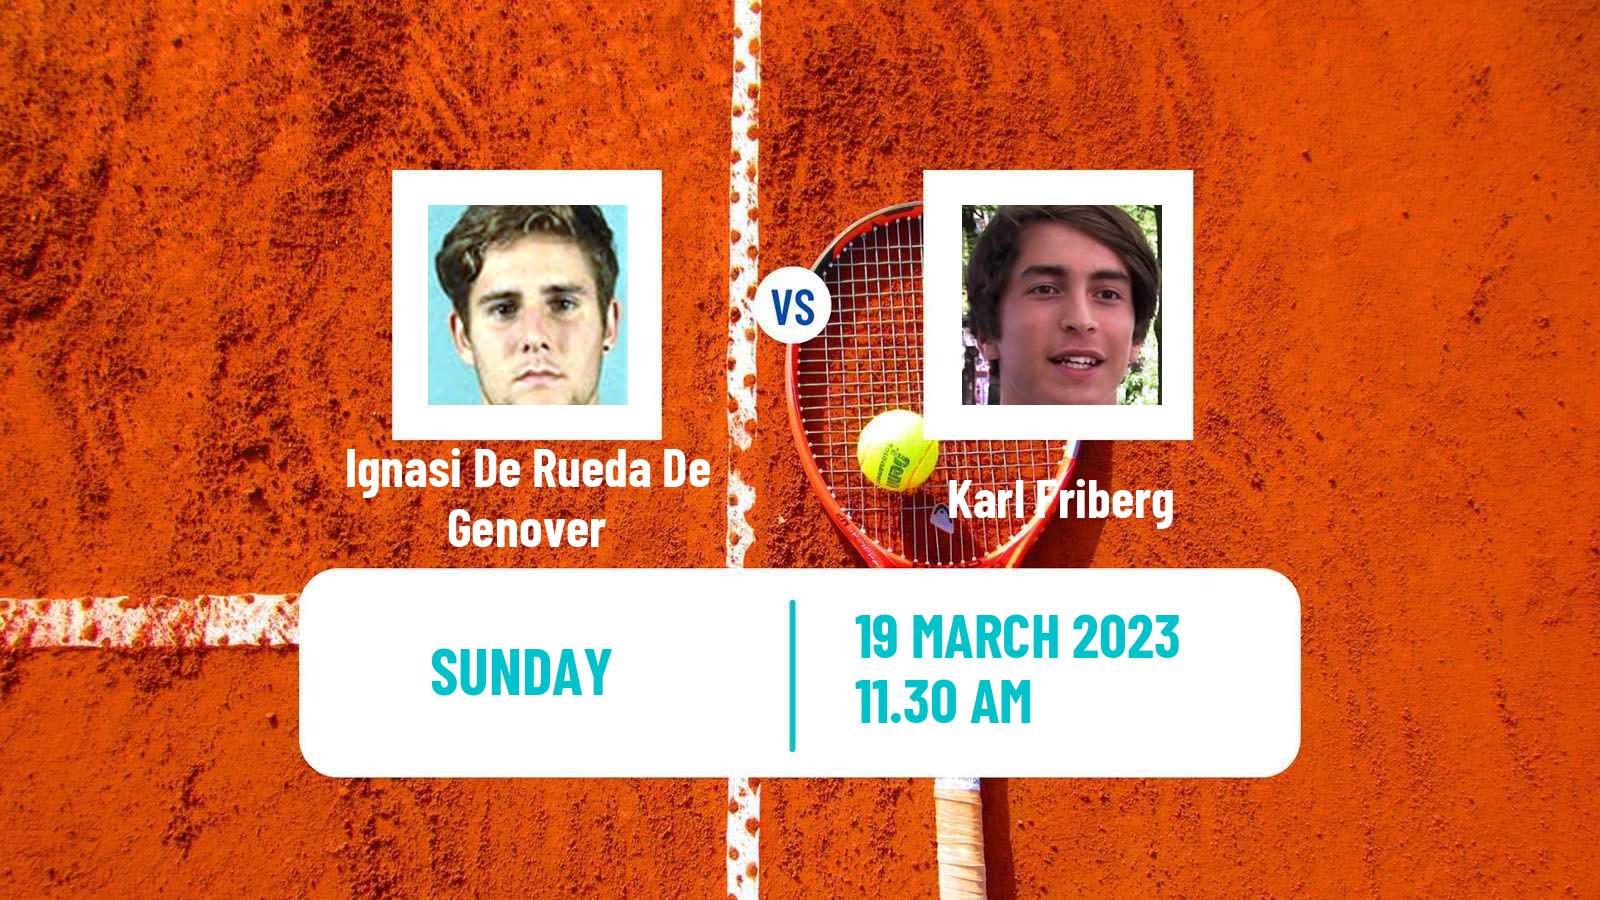 Tennis ATP Challenger Ignasi De Rueda De Genover - Karl Friberg